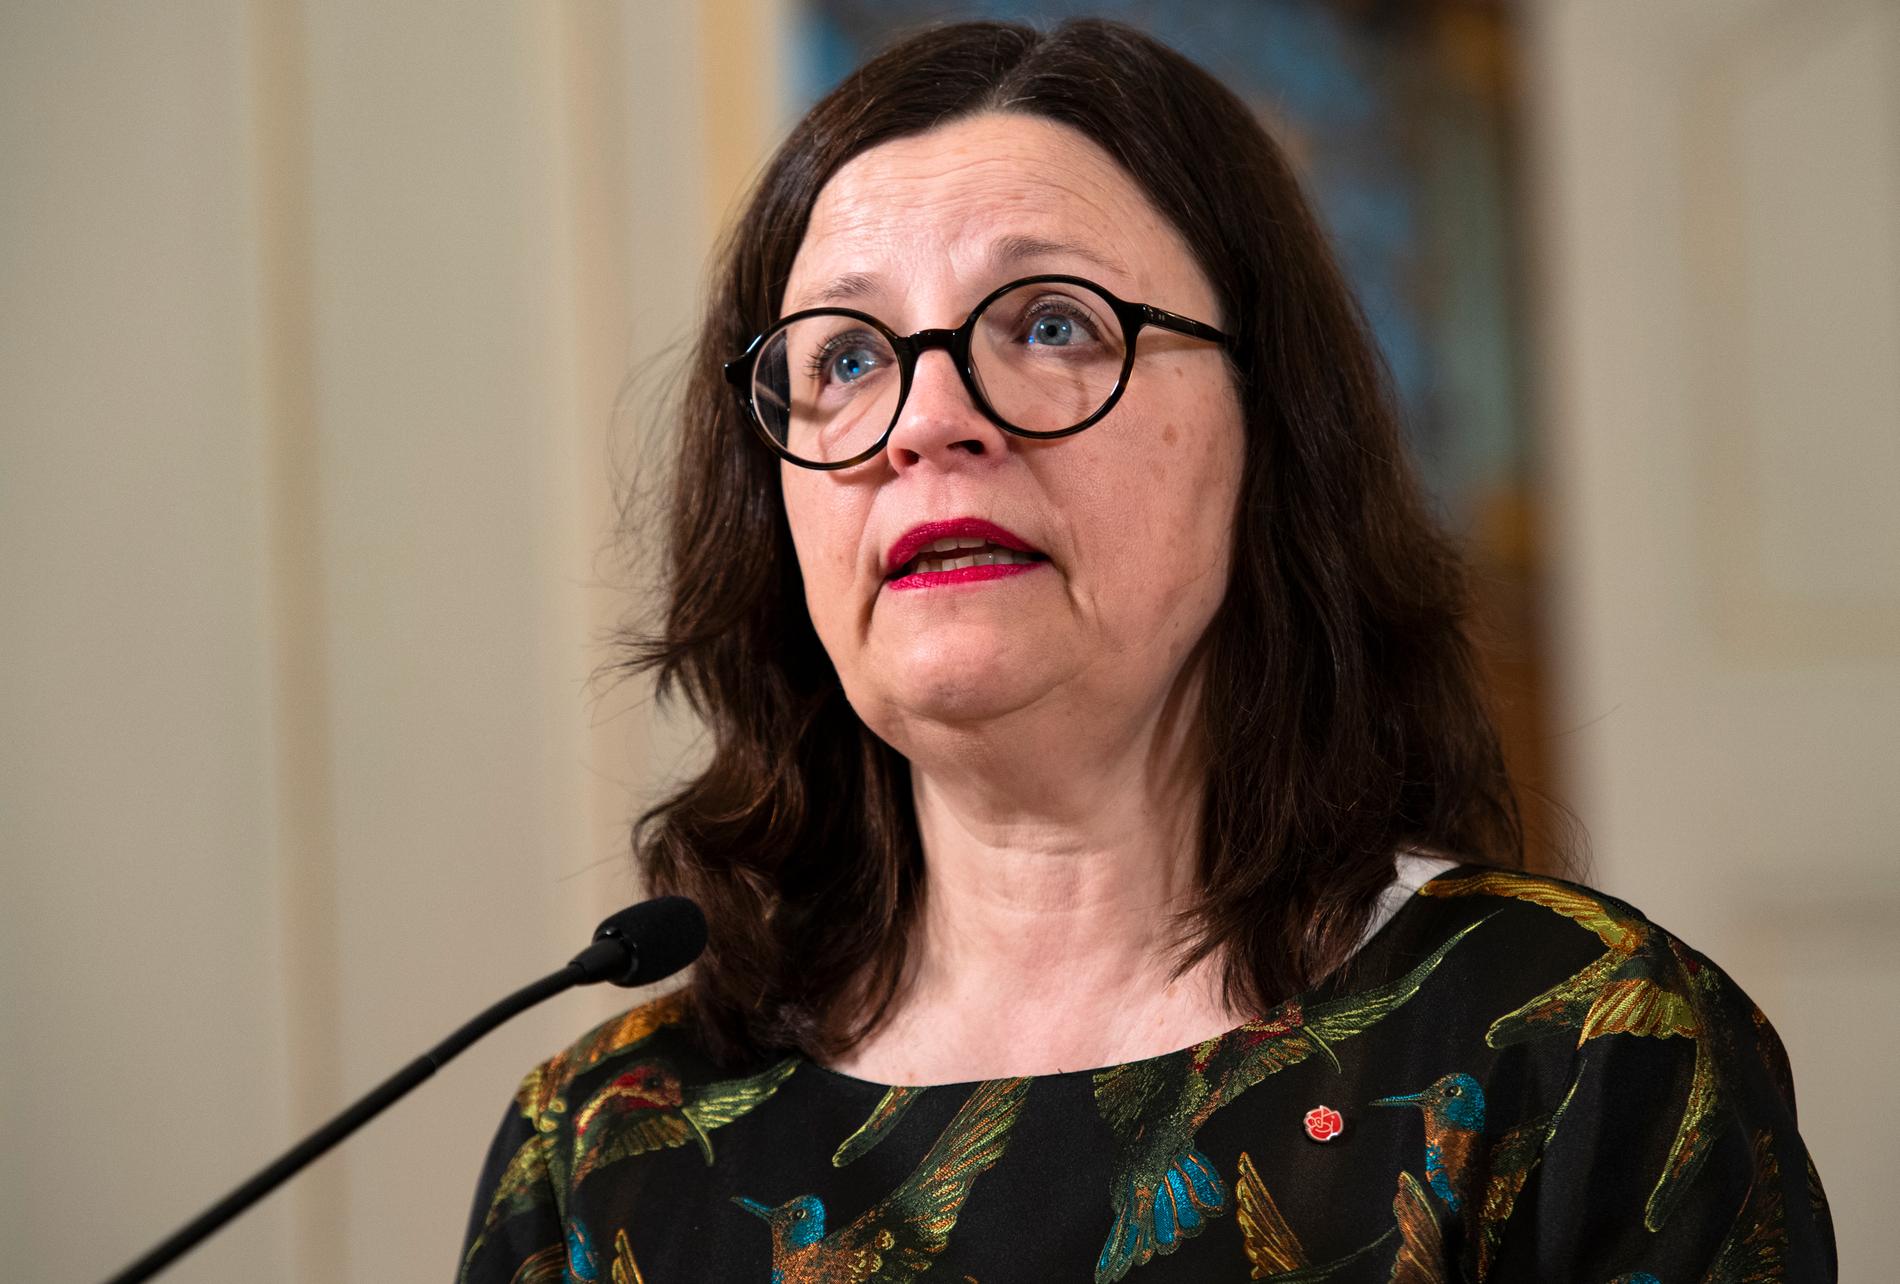 Utbildningsminister Anna Ekström (S) uppger att regeringens bedömning är att studiemedlens totalbelopp är väl avvägt.